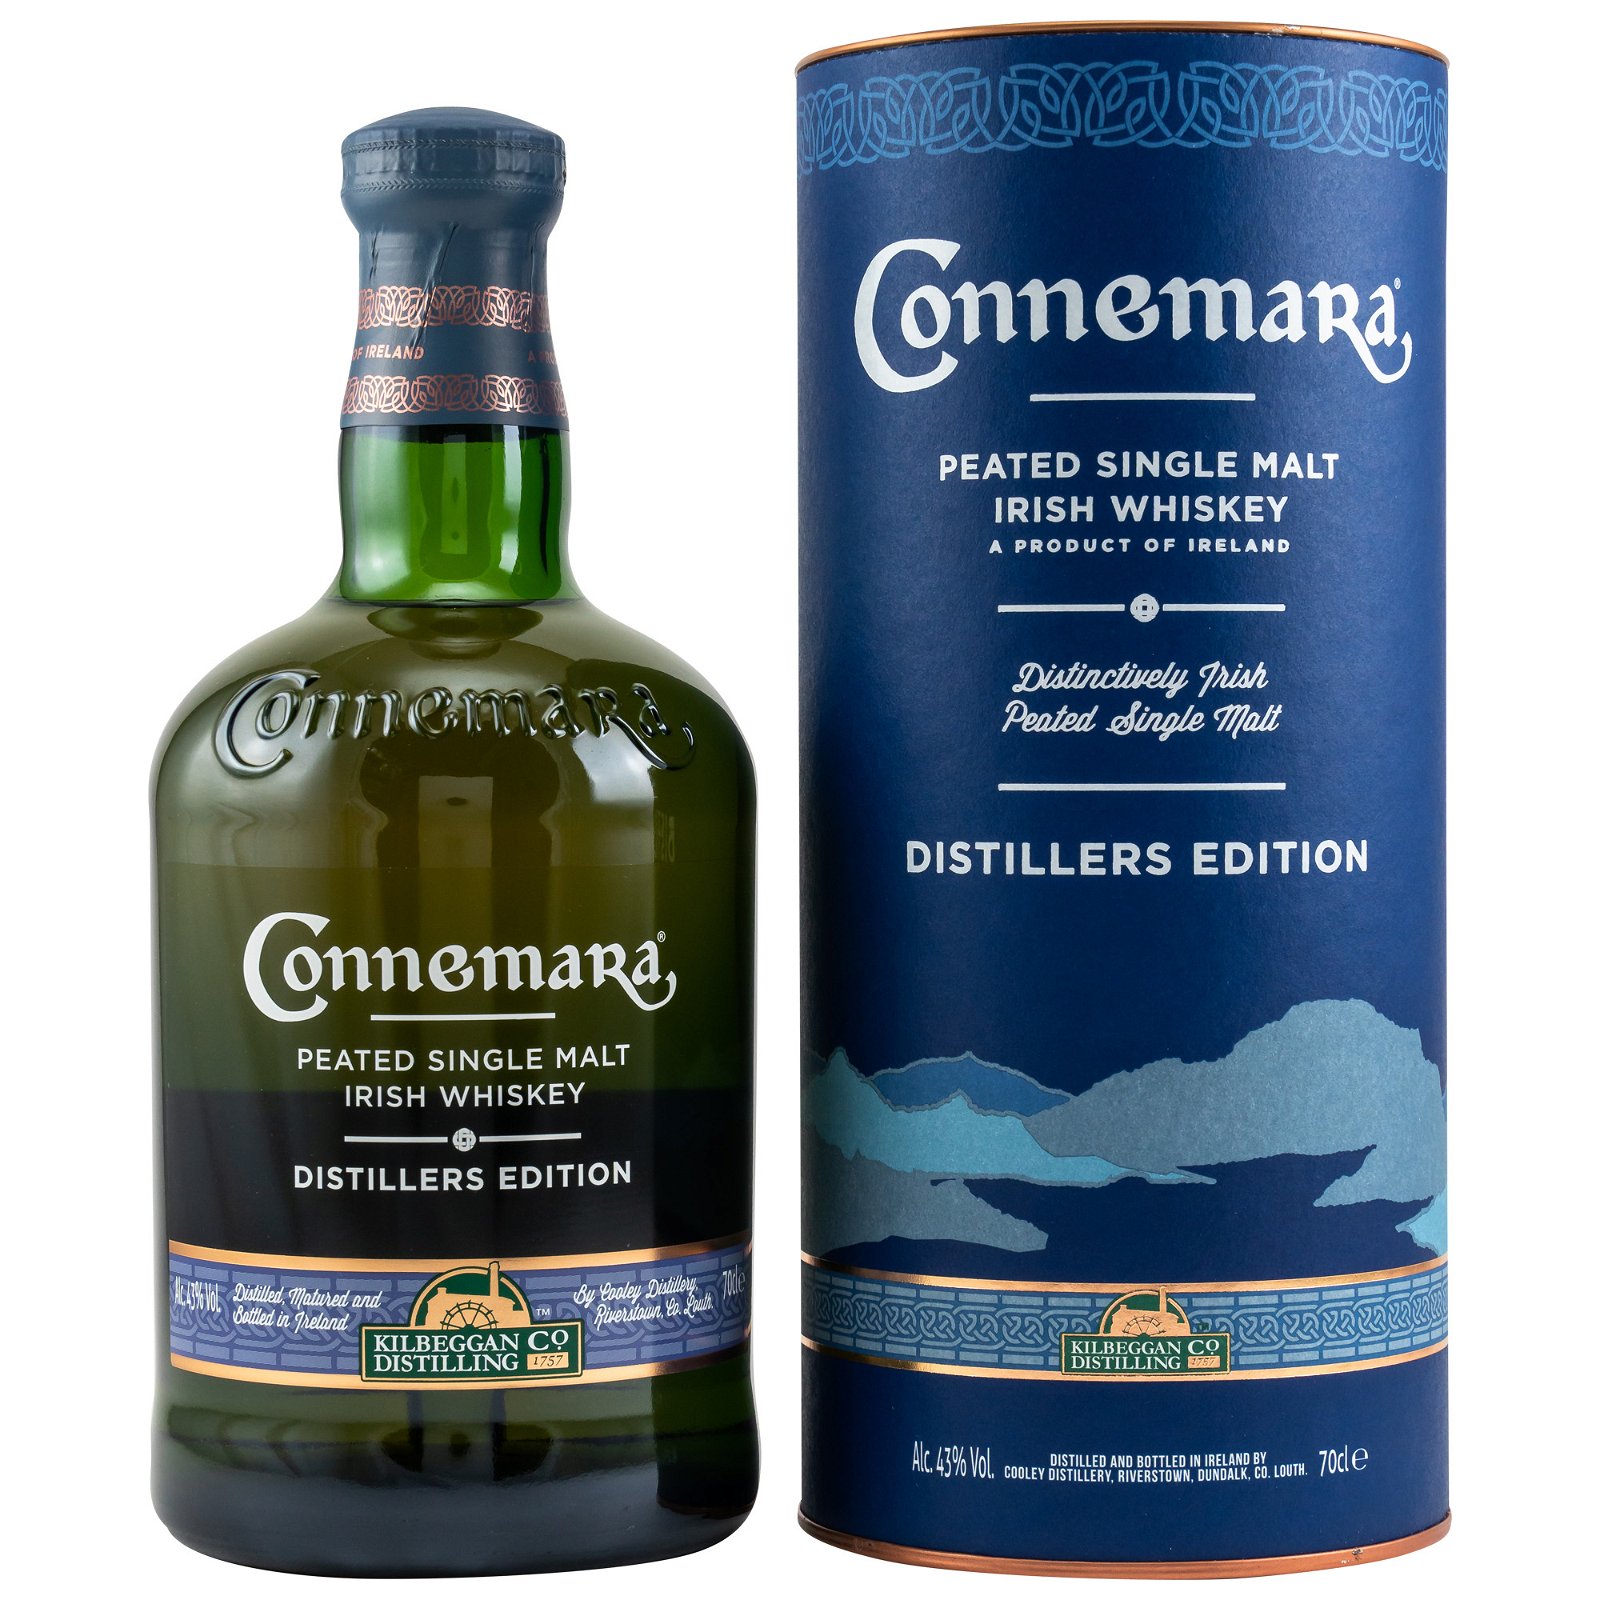 Connemara Distillers Edition (Irland)